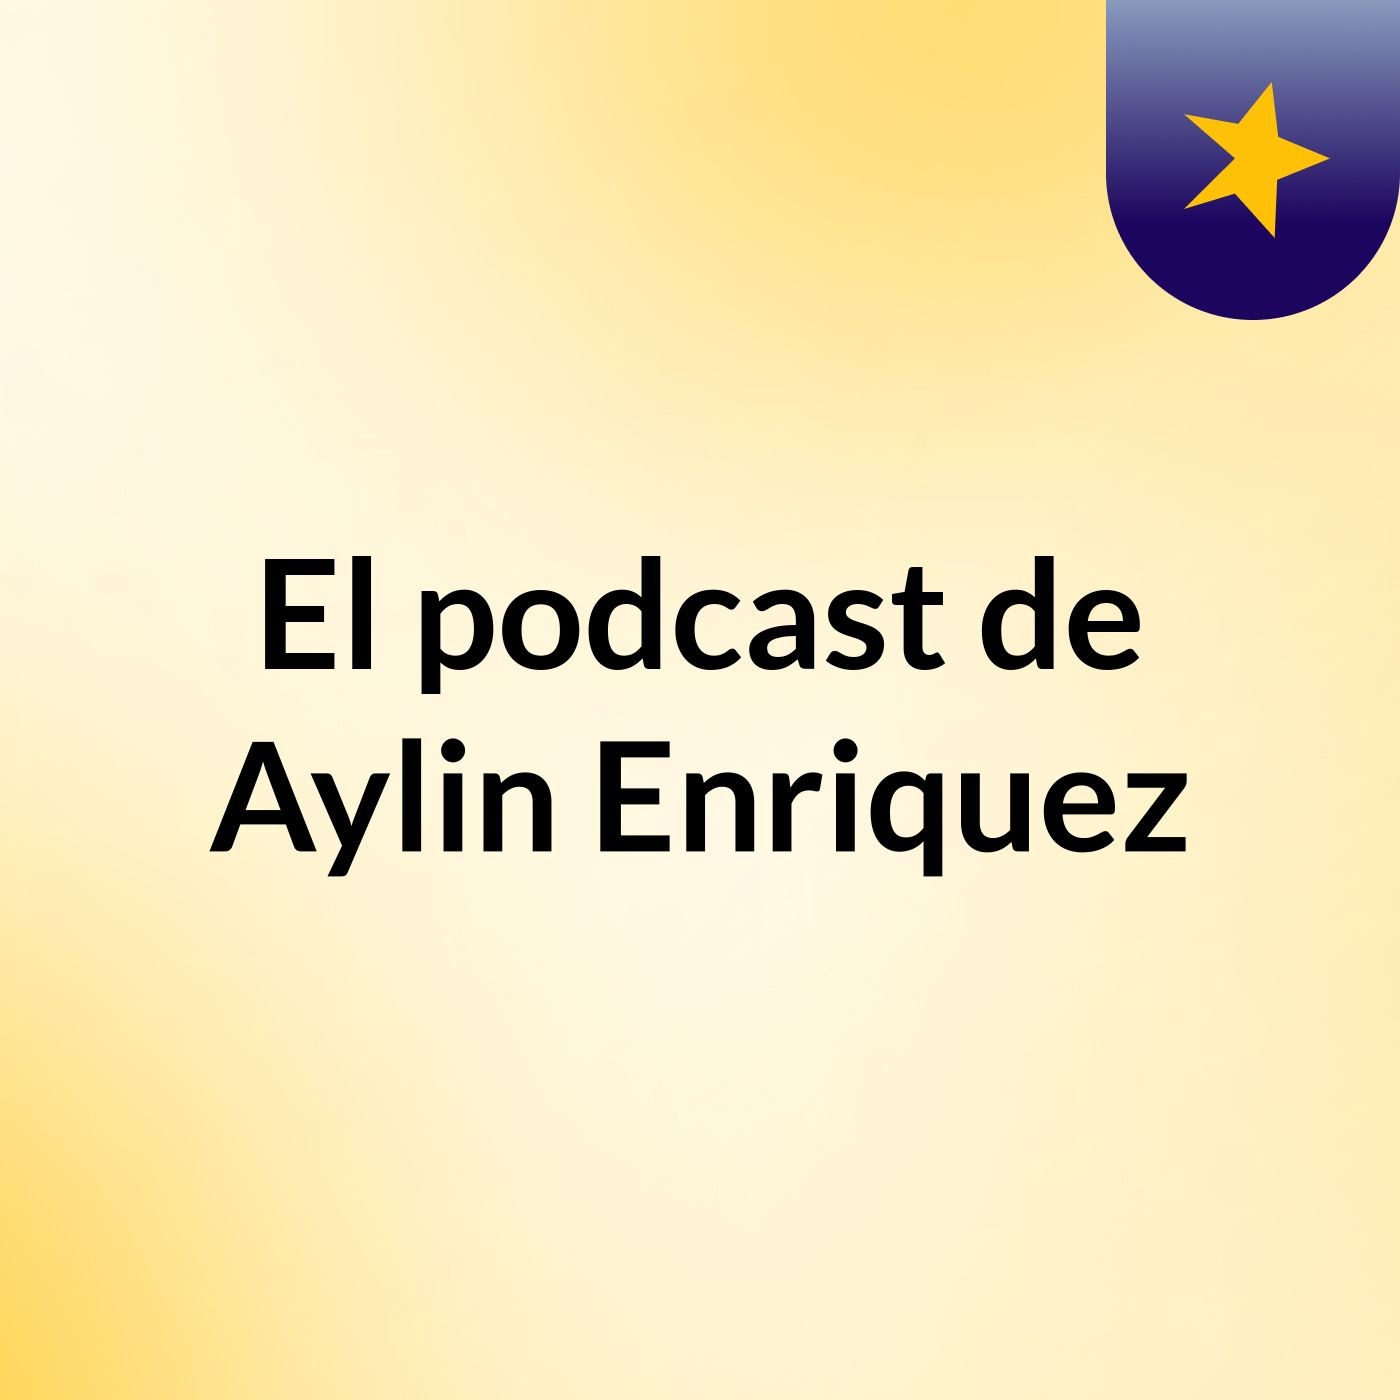 El podcast de Aylin Enriquez